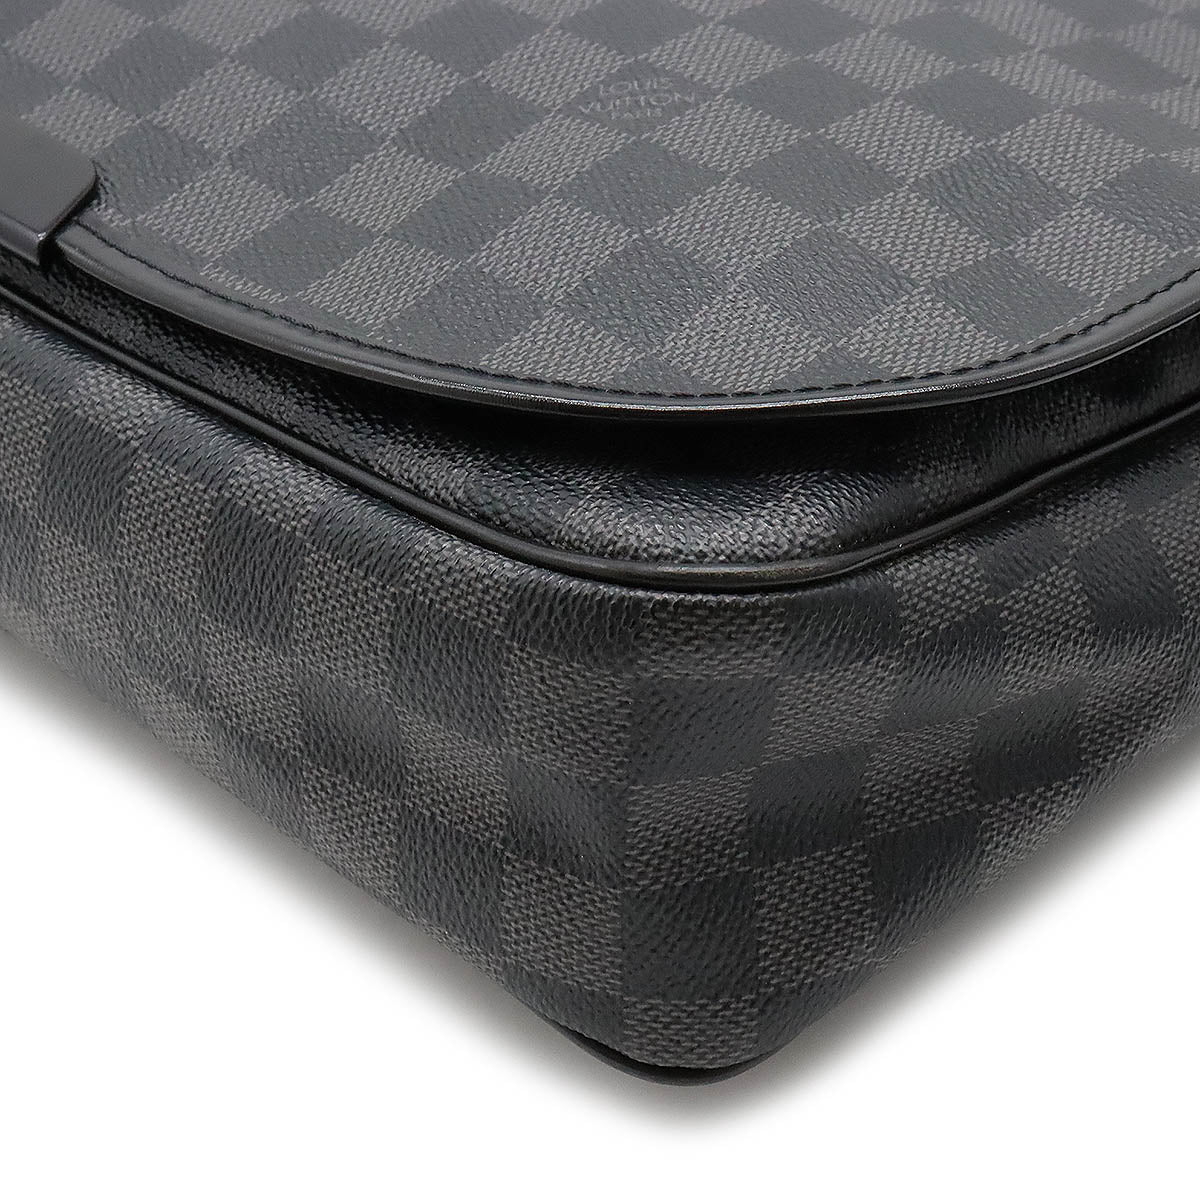 Louis Vuitton - Authenticated Daniel mm Satchel Bag - Cloth Black for Men, Very Good Condition